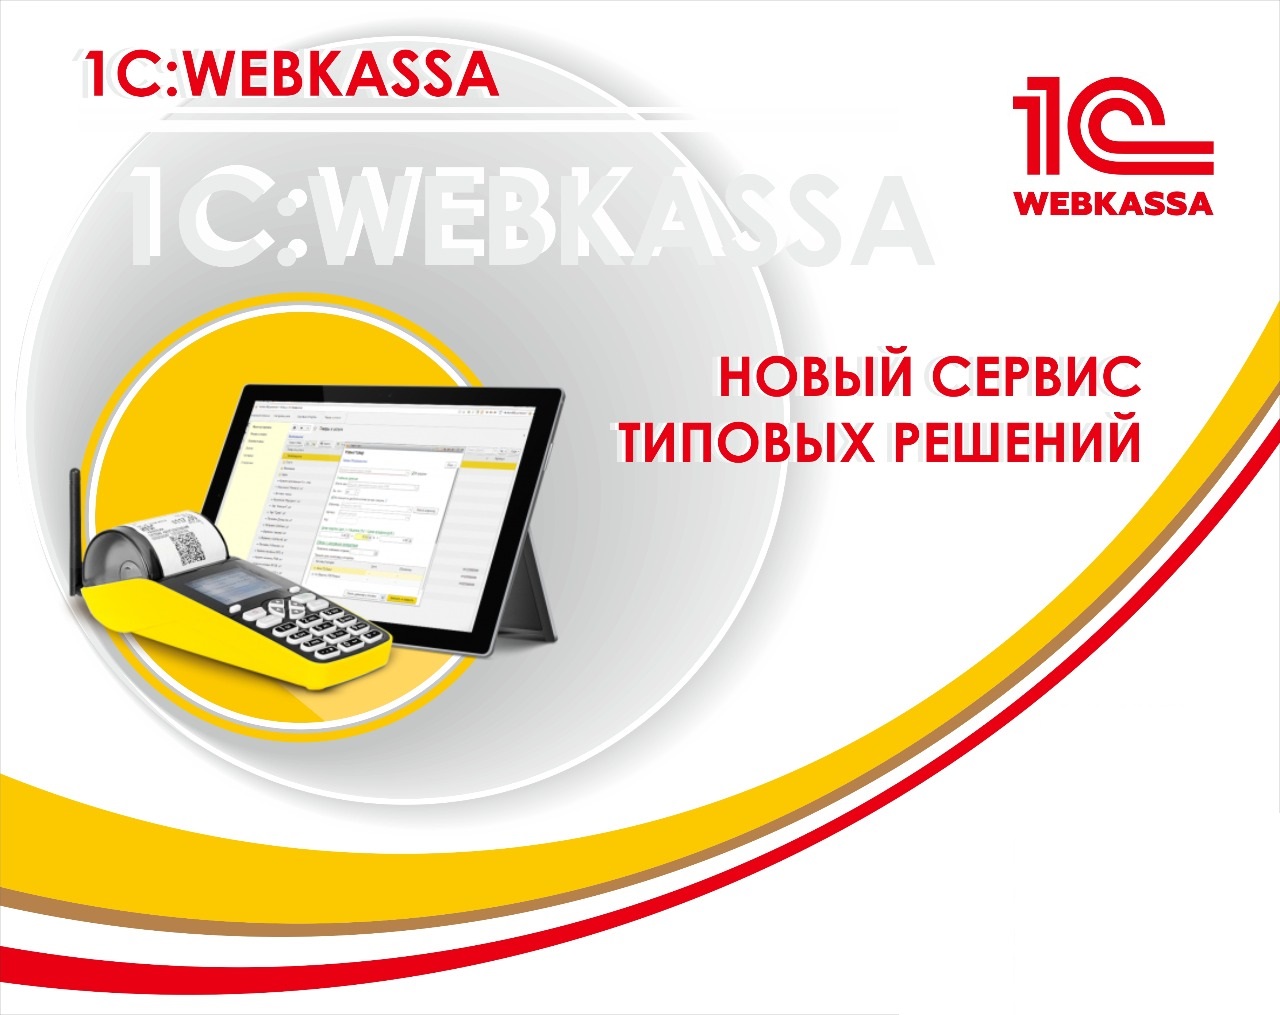 Вебинар «Сервис 1С:Webkassa. Преимущества и выгоды для пользователей» 28 мая 2019 года